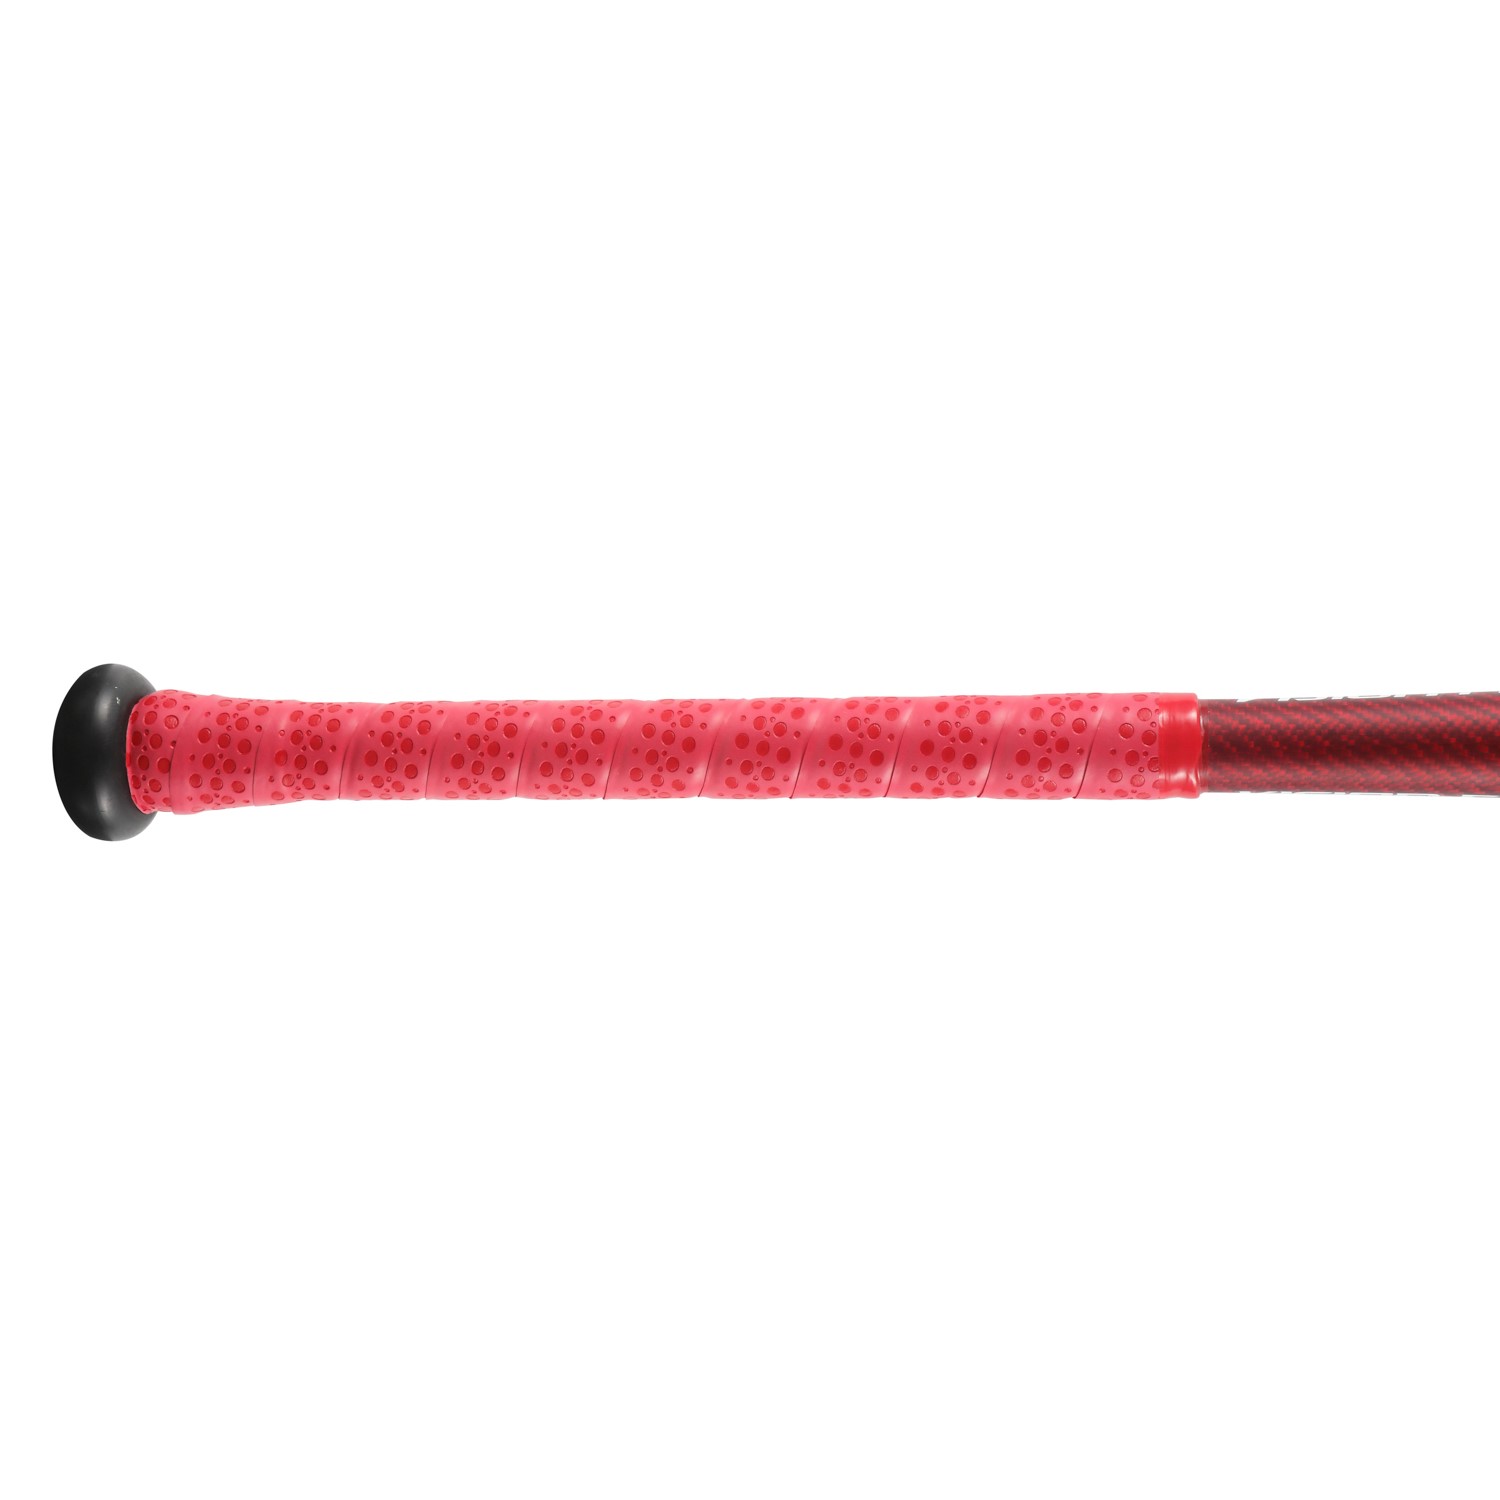 Venta caliente Senior -10 bate de béisbol de barril grande para el mercado estadounidense